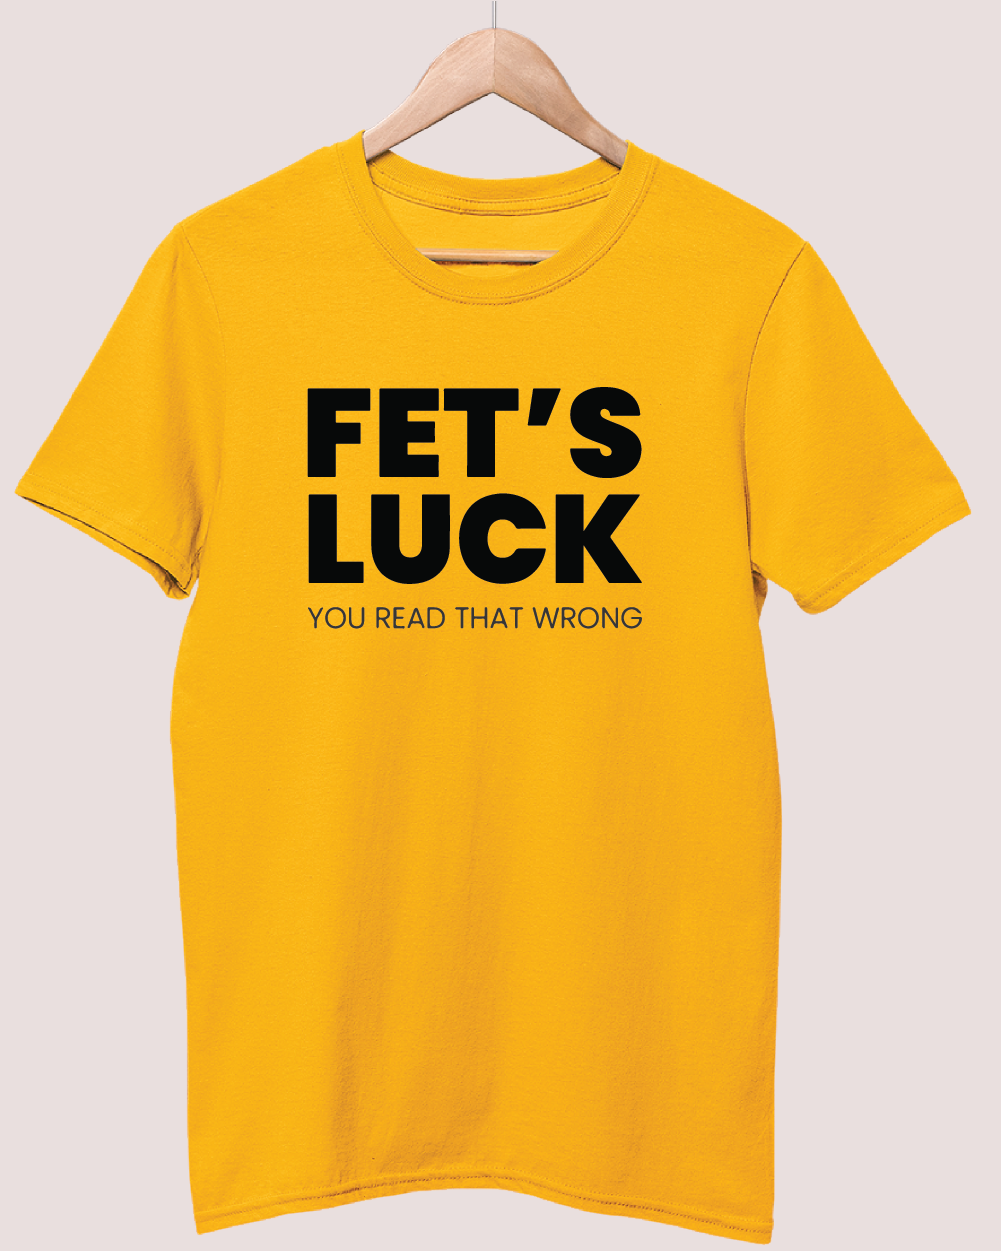 Fets luck t-shirt